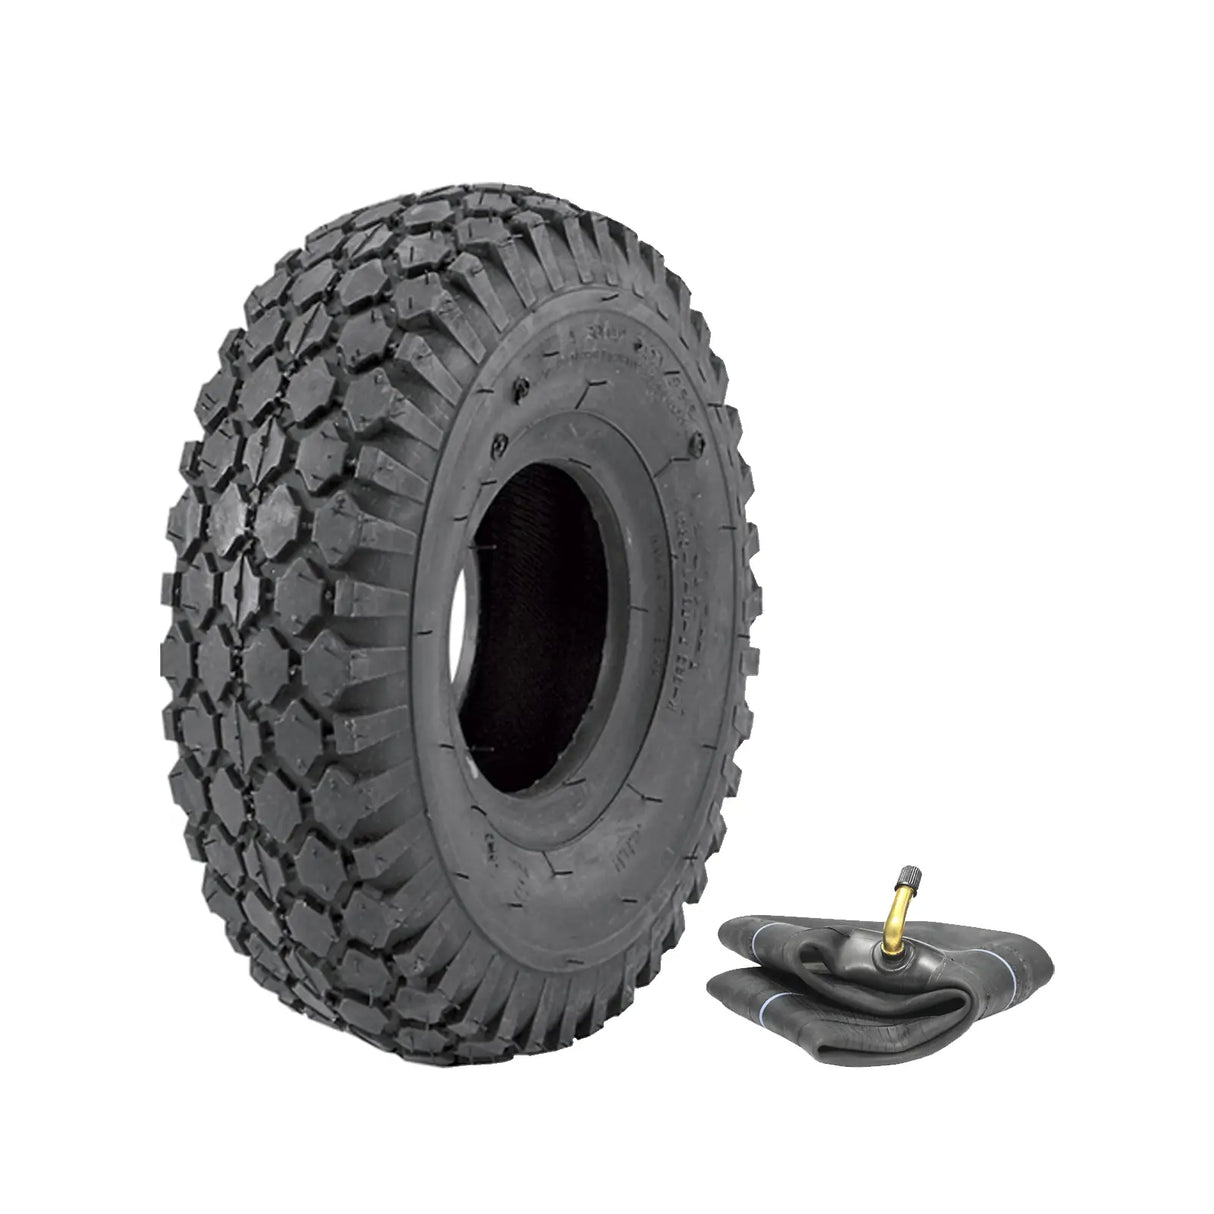 4.10/3.50-4 K352 (4 PLY) Kenda Diamond Tyre and Tube